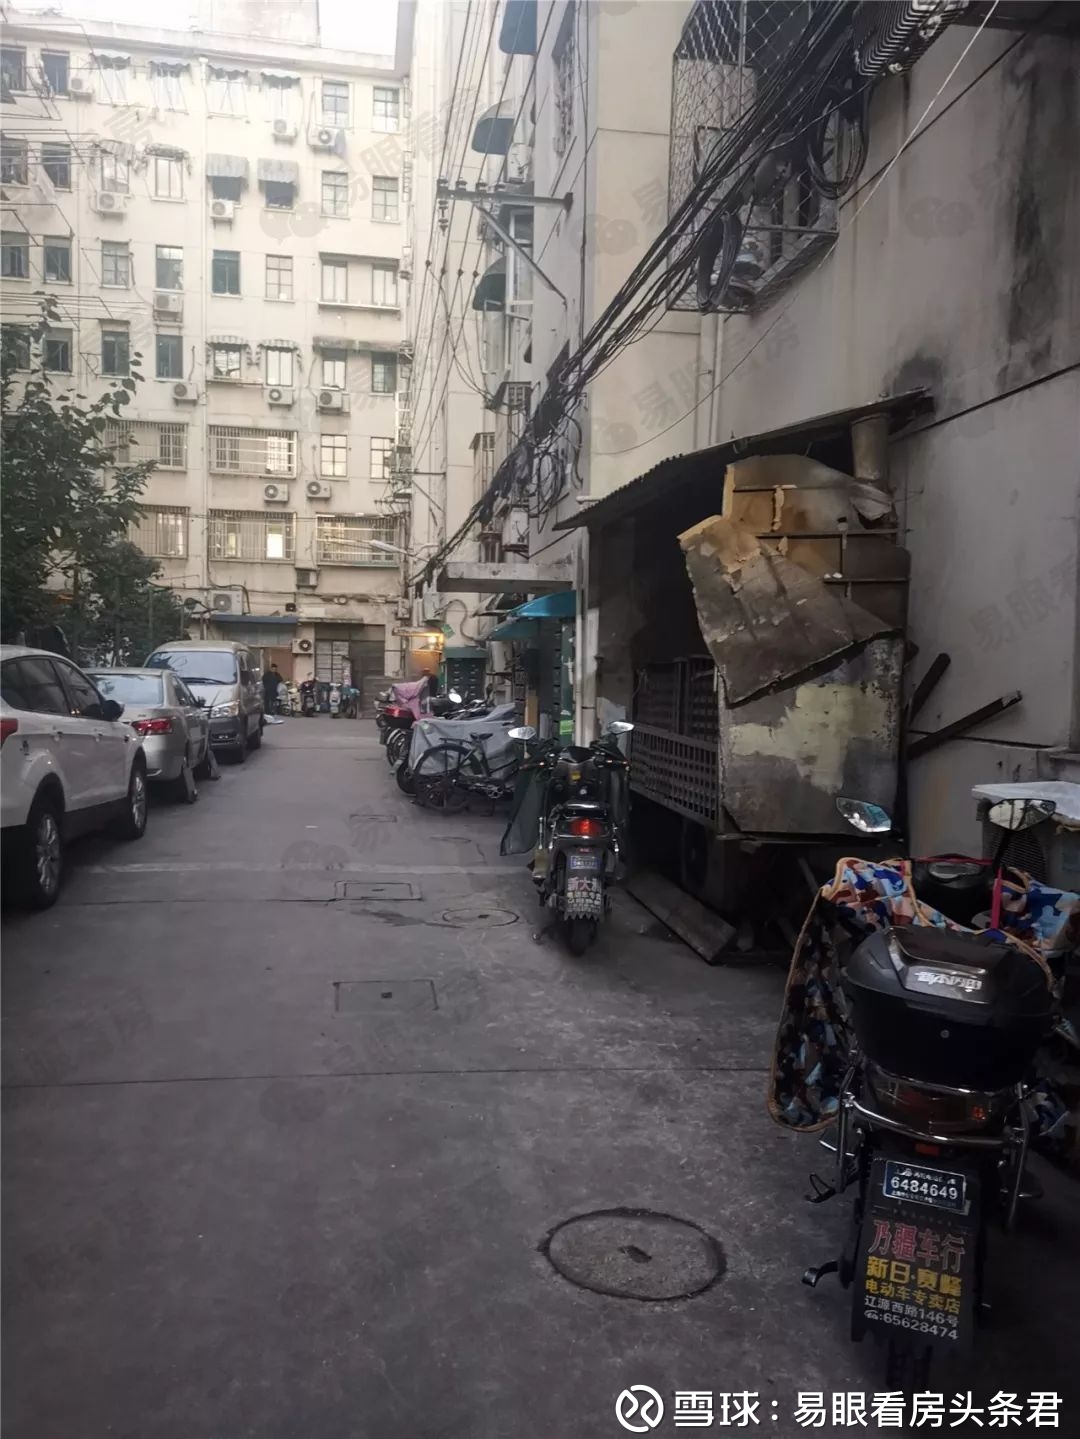 花0万住在上海内环内会是什么体验 如今在上海 能用0万 买到的新房真的可以说得上是屈指可数 并且绝大多数都位于金山 奉贤这样偏远的郊外 和上海市区相距甚